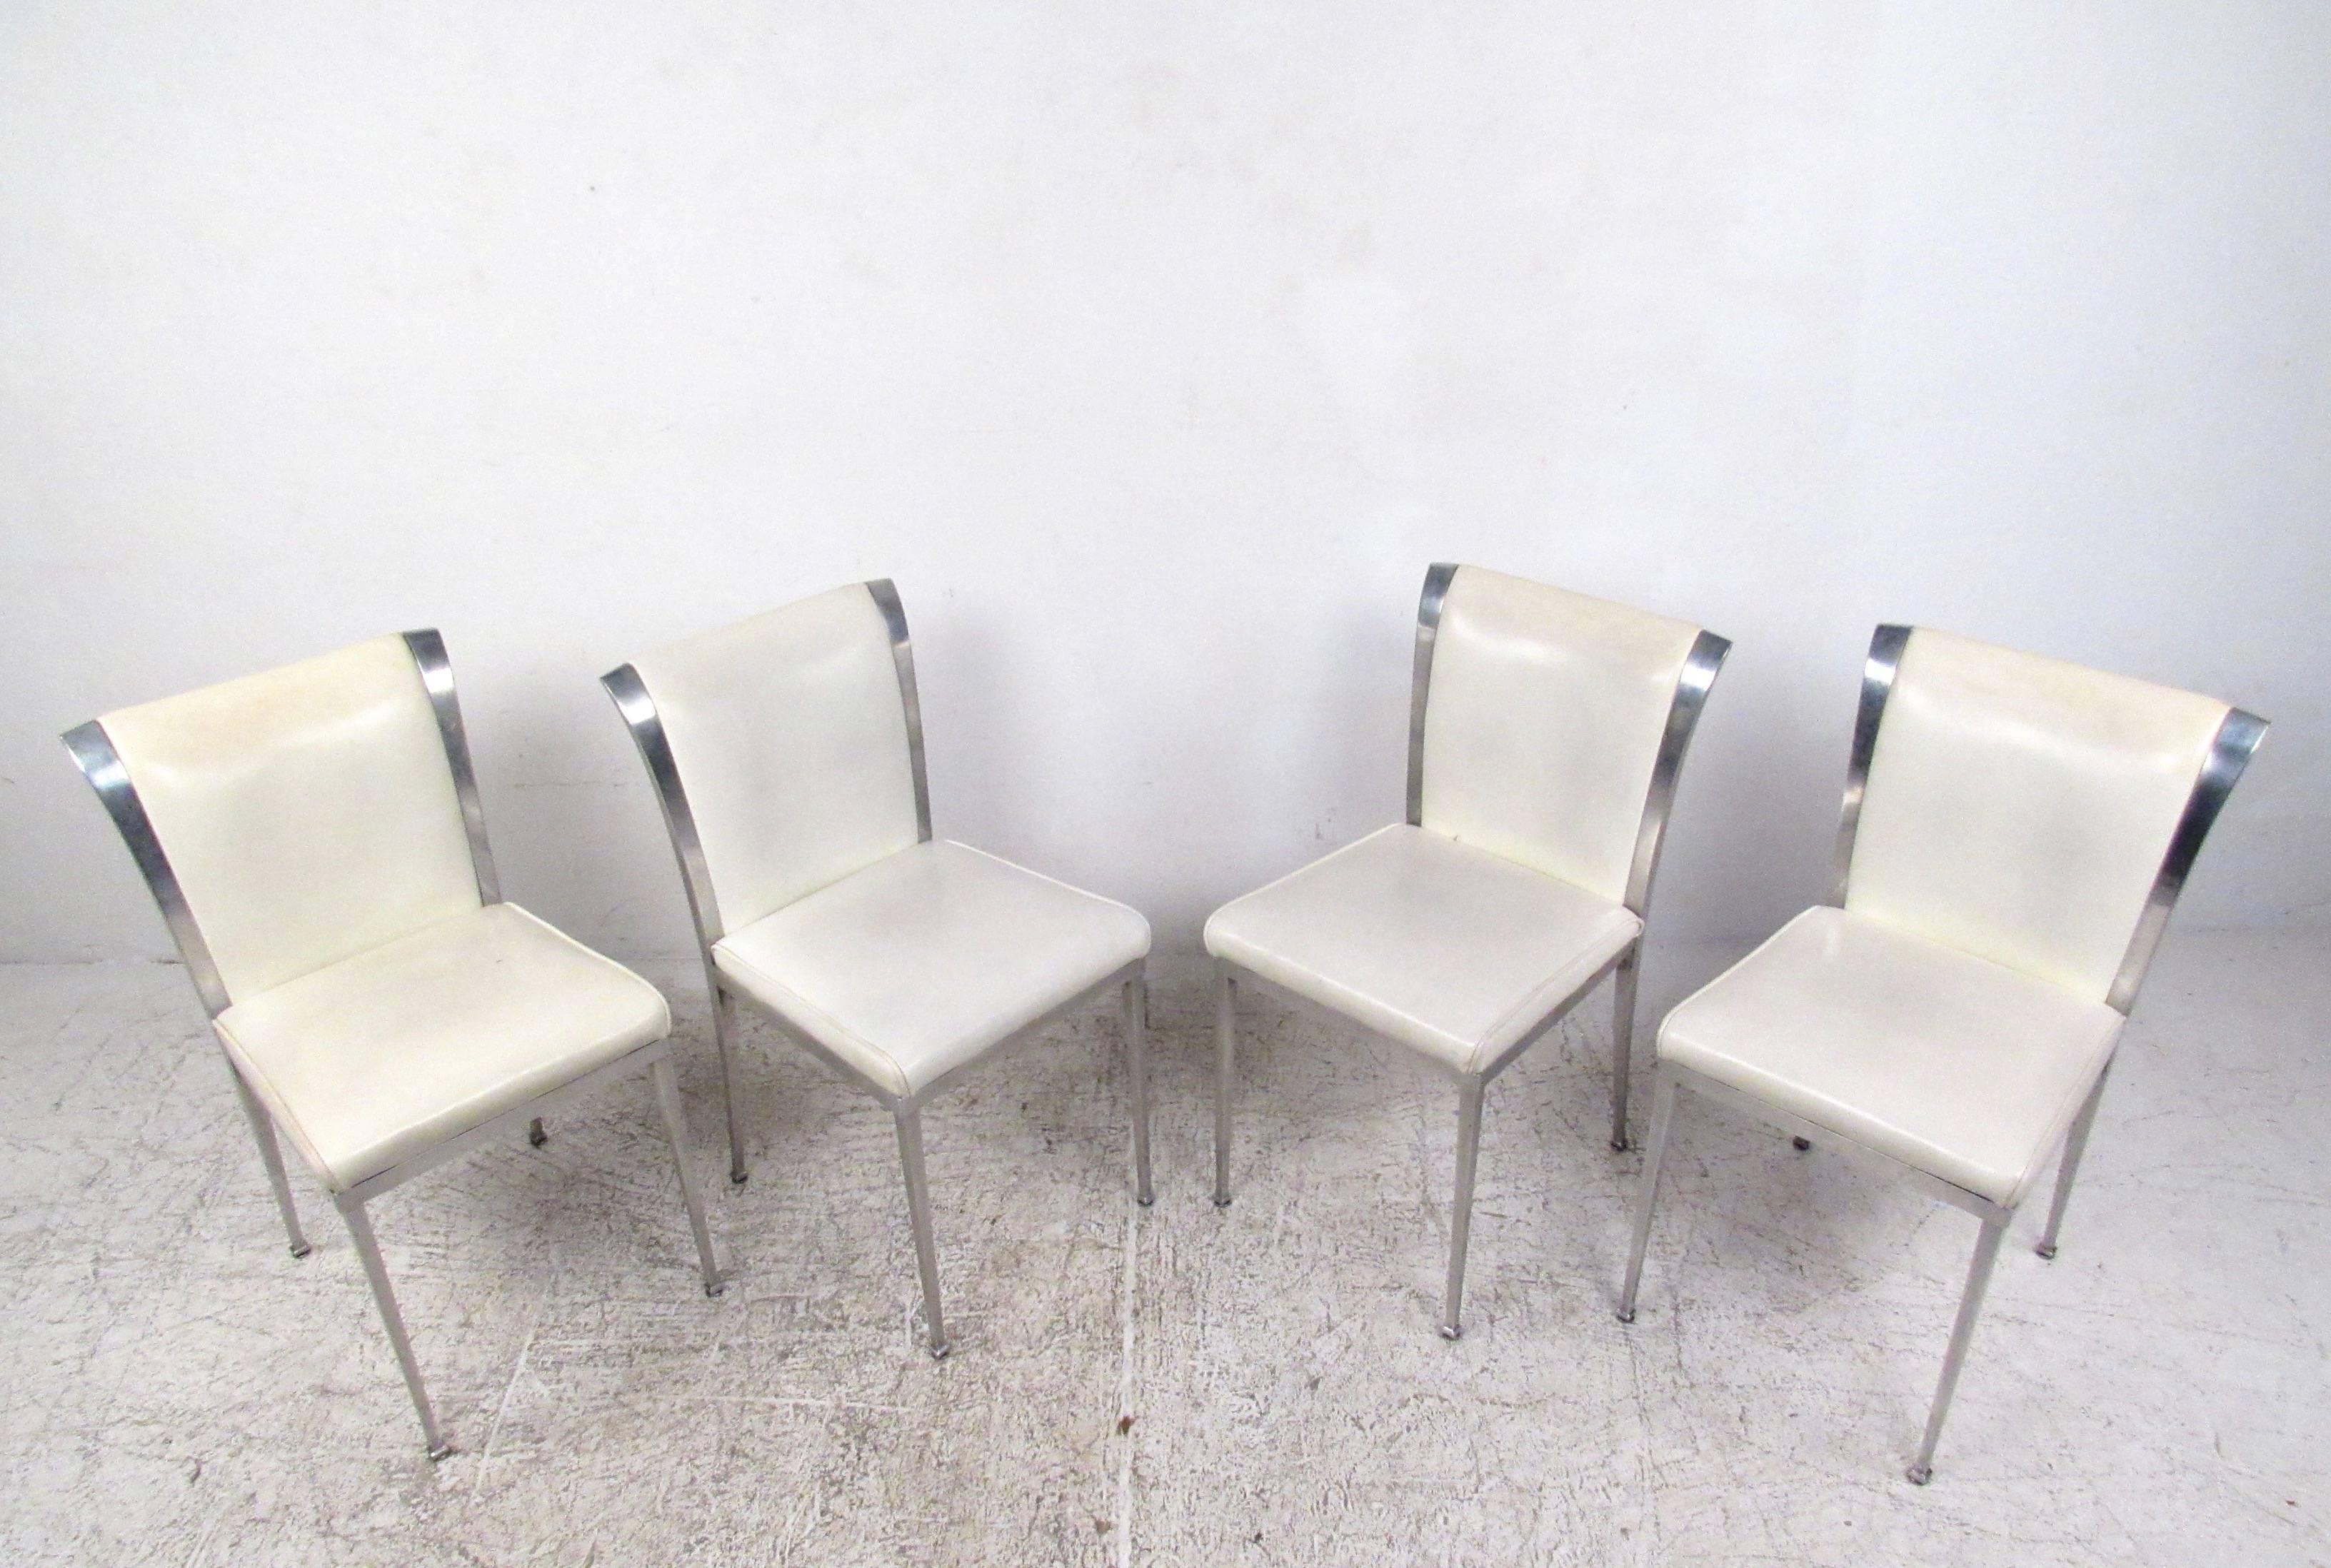 Dieses Set aus vier Vintage-Esszimmerstühlen besteht aus robusten Aluminiumrahmen mit einteiligen Füßen und konischen Rückenlehnen. Die leicht ausgestellten Rückenlehnen sind mit Vintage-Vinyl gepolstert und unterstreichen die moderne Ausstrahlung